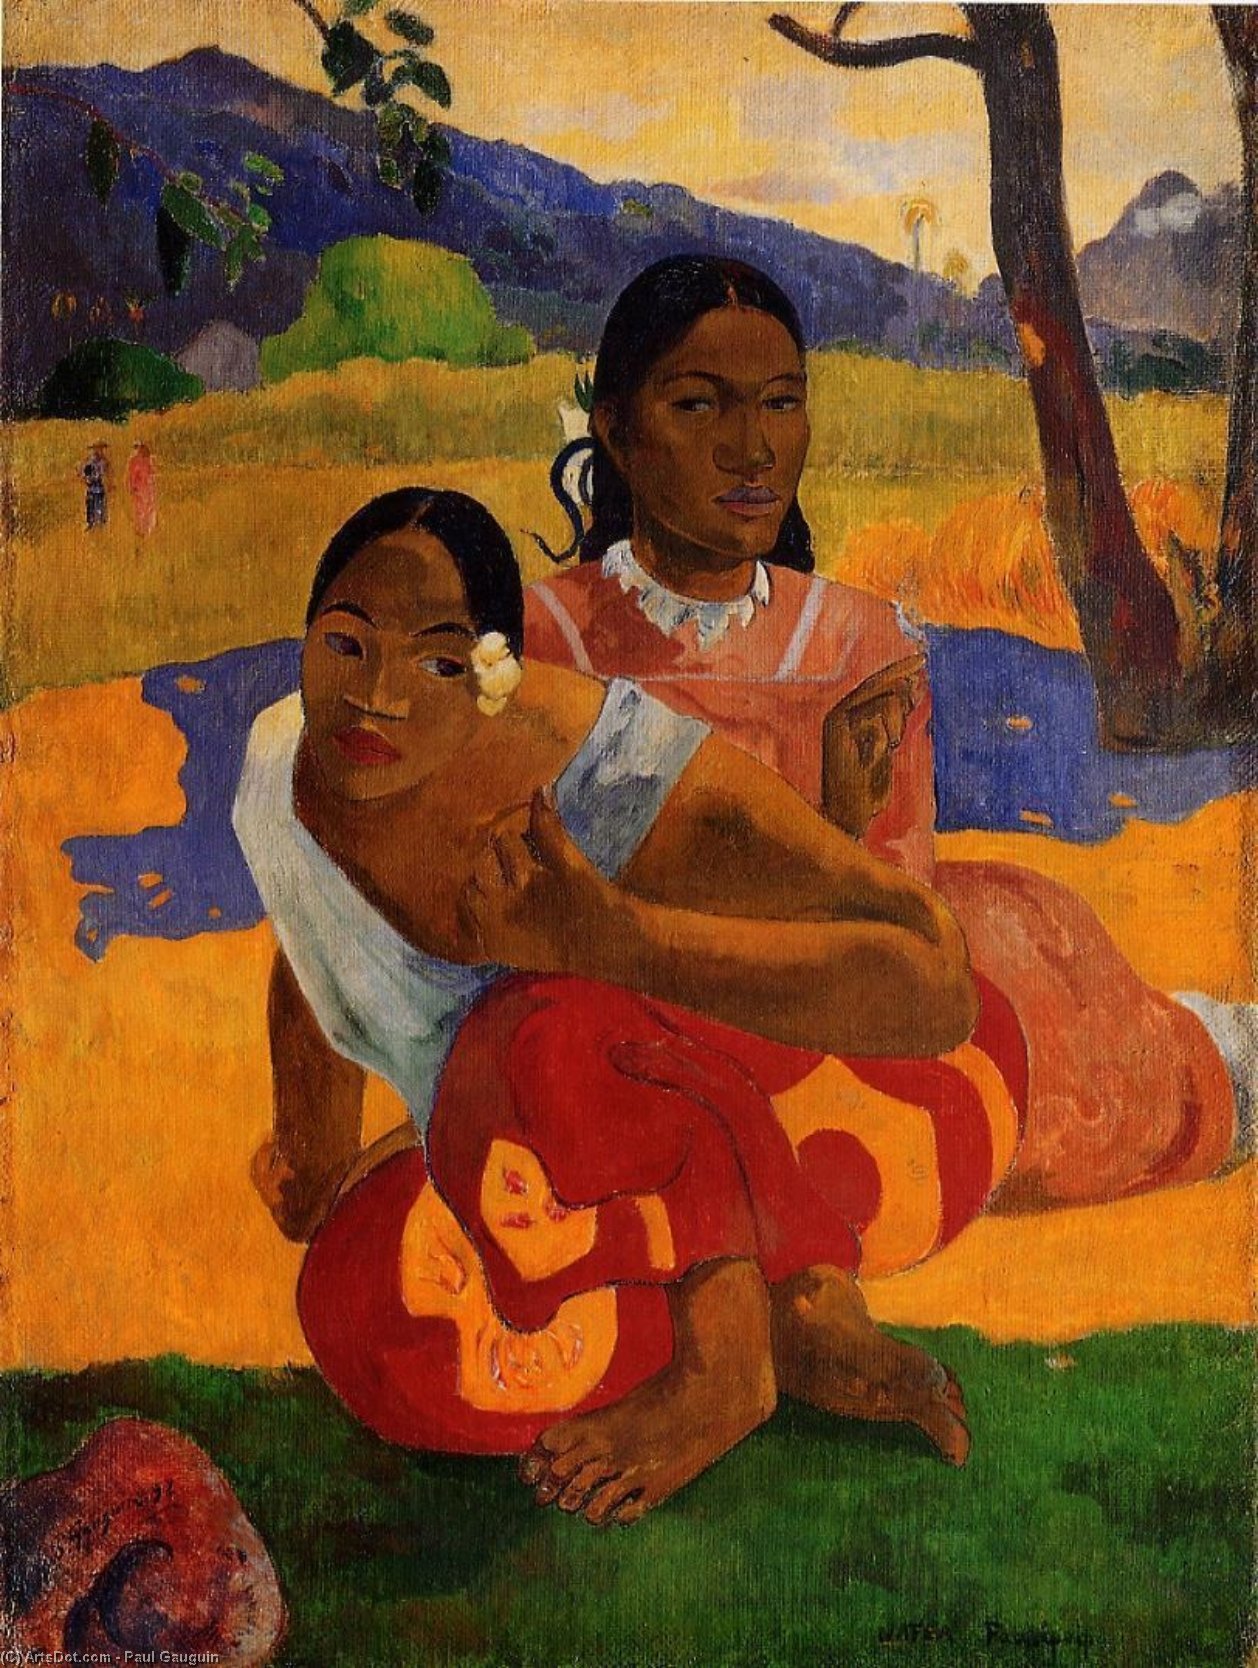 Achat Reproductions D'art Nafeaffaa Ipolpo (aussi connu sous le nom de Quand allez-vous vous marier.), 1892 de Paul Gauguin (1848-1903, France) | ArtsDot.com